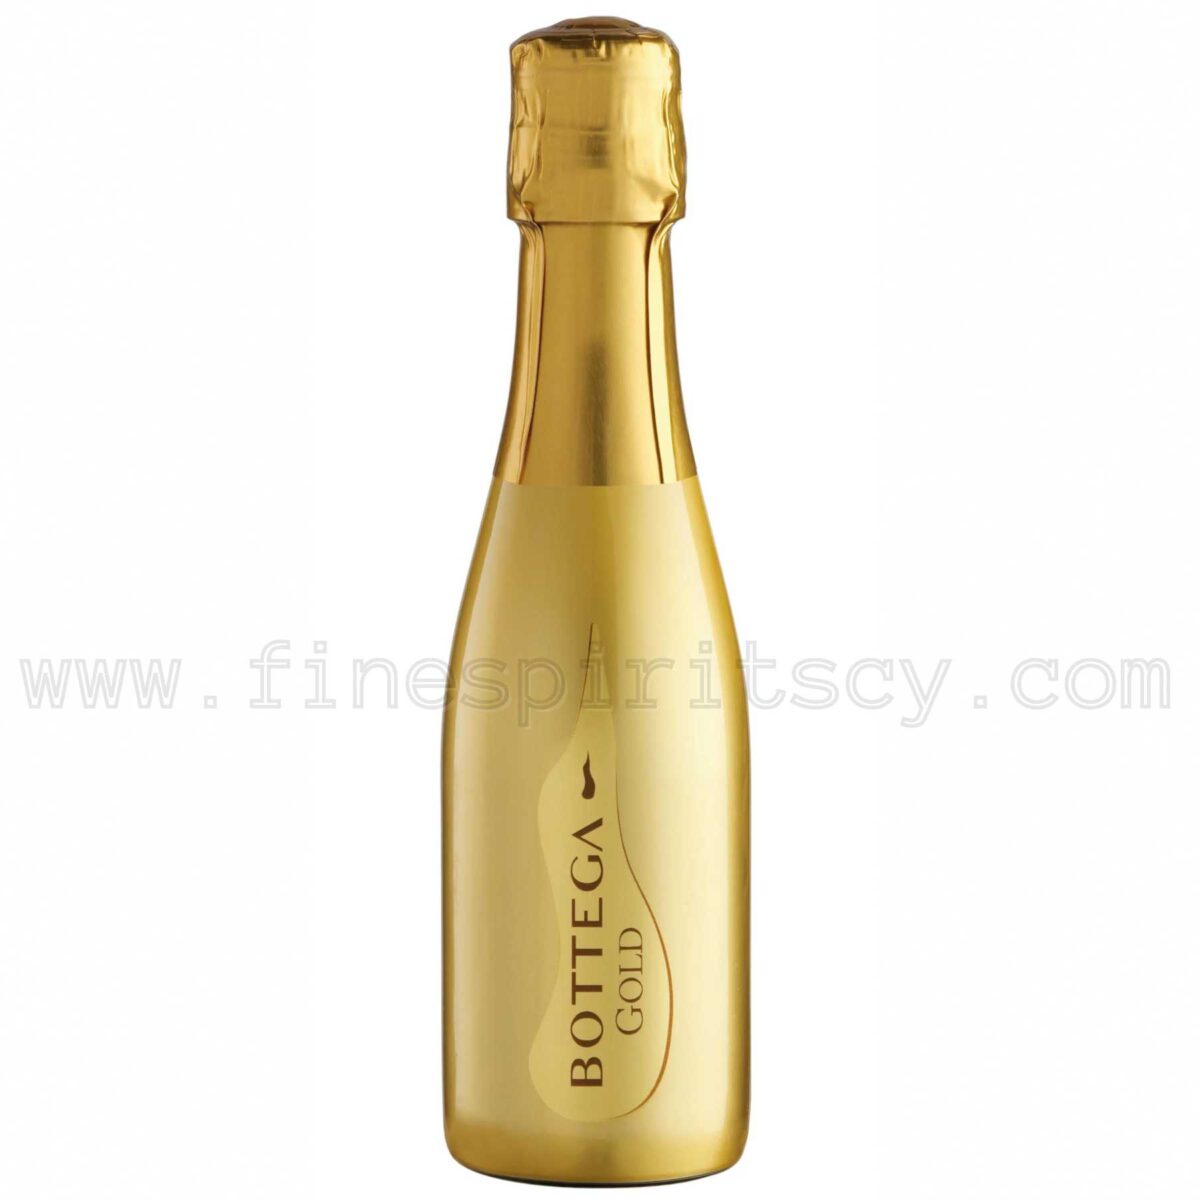 Bottega Gold 200ml 20cl 0.2L Price Cyprus CY Wine Pinot Nero prosecco doc